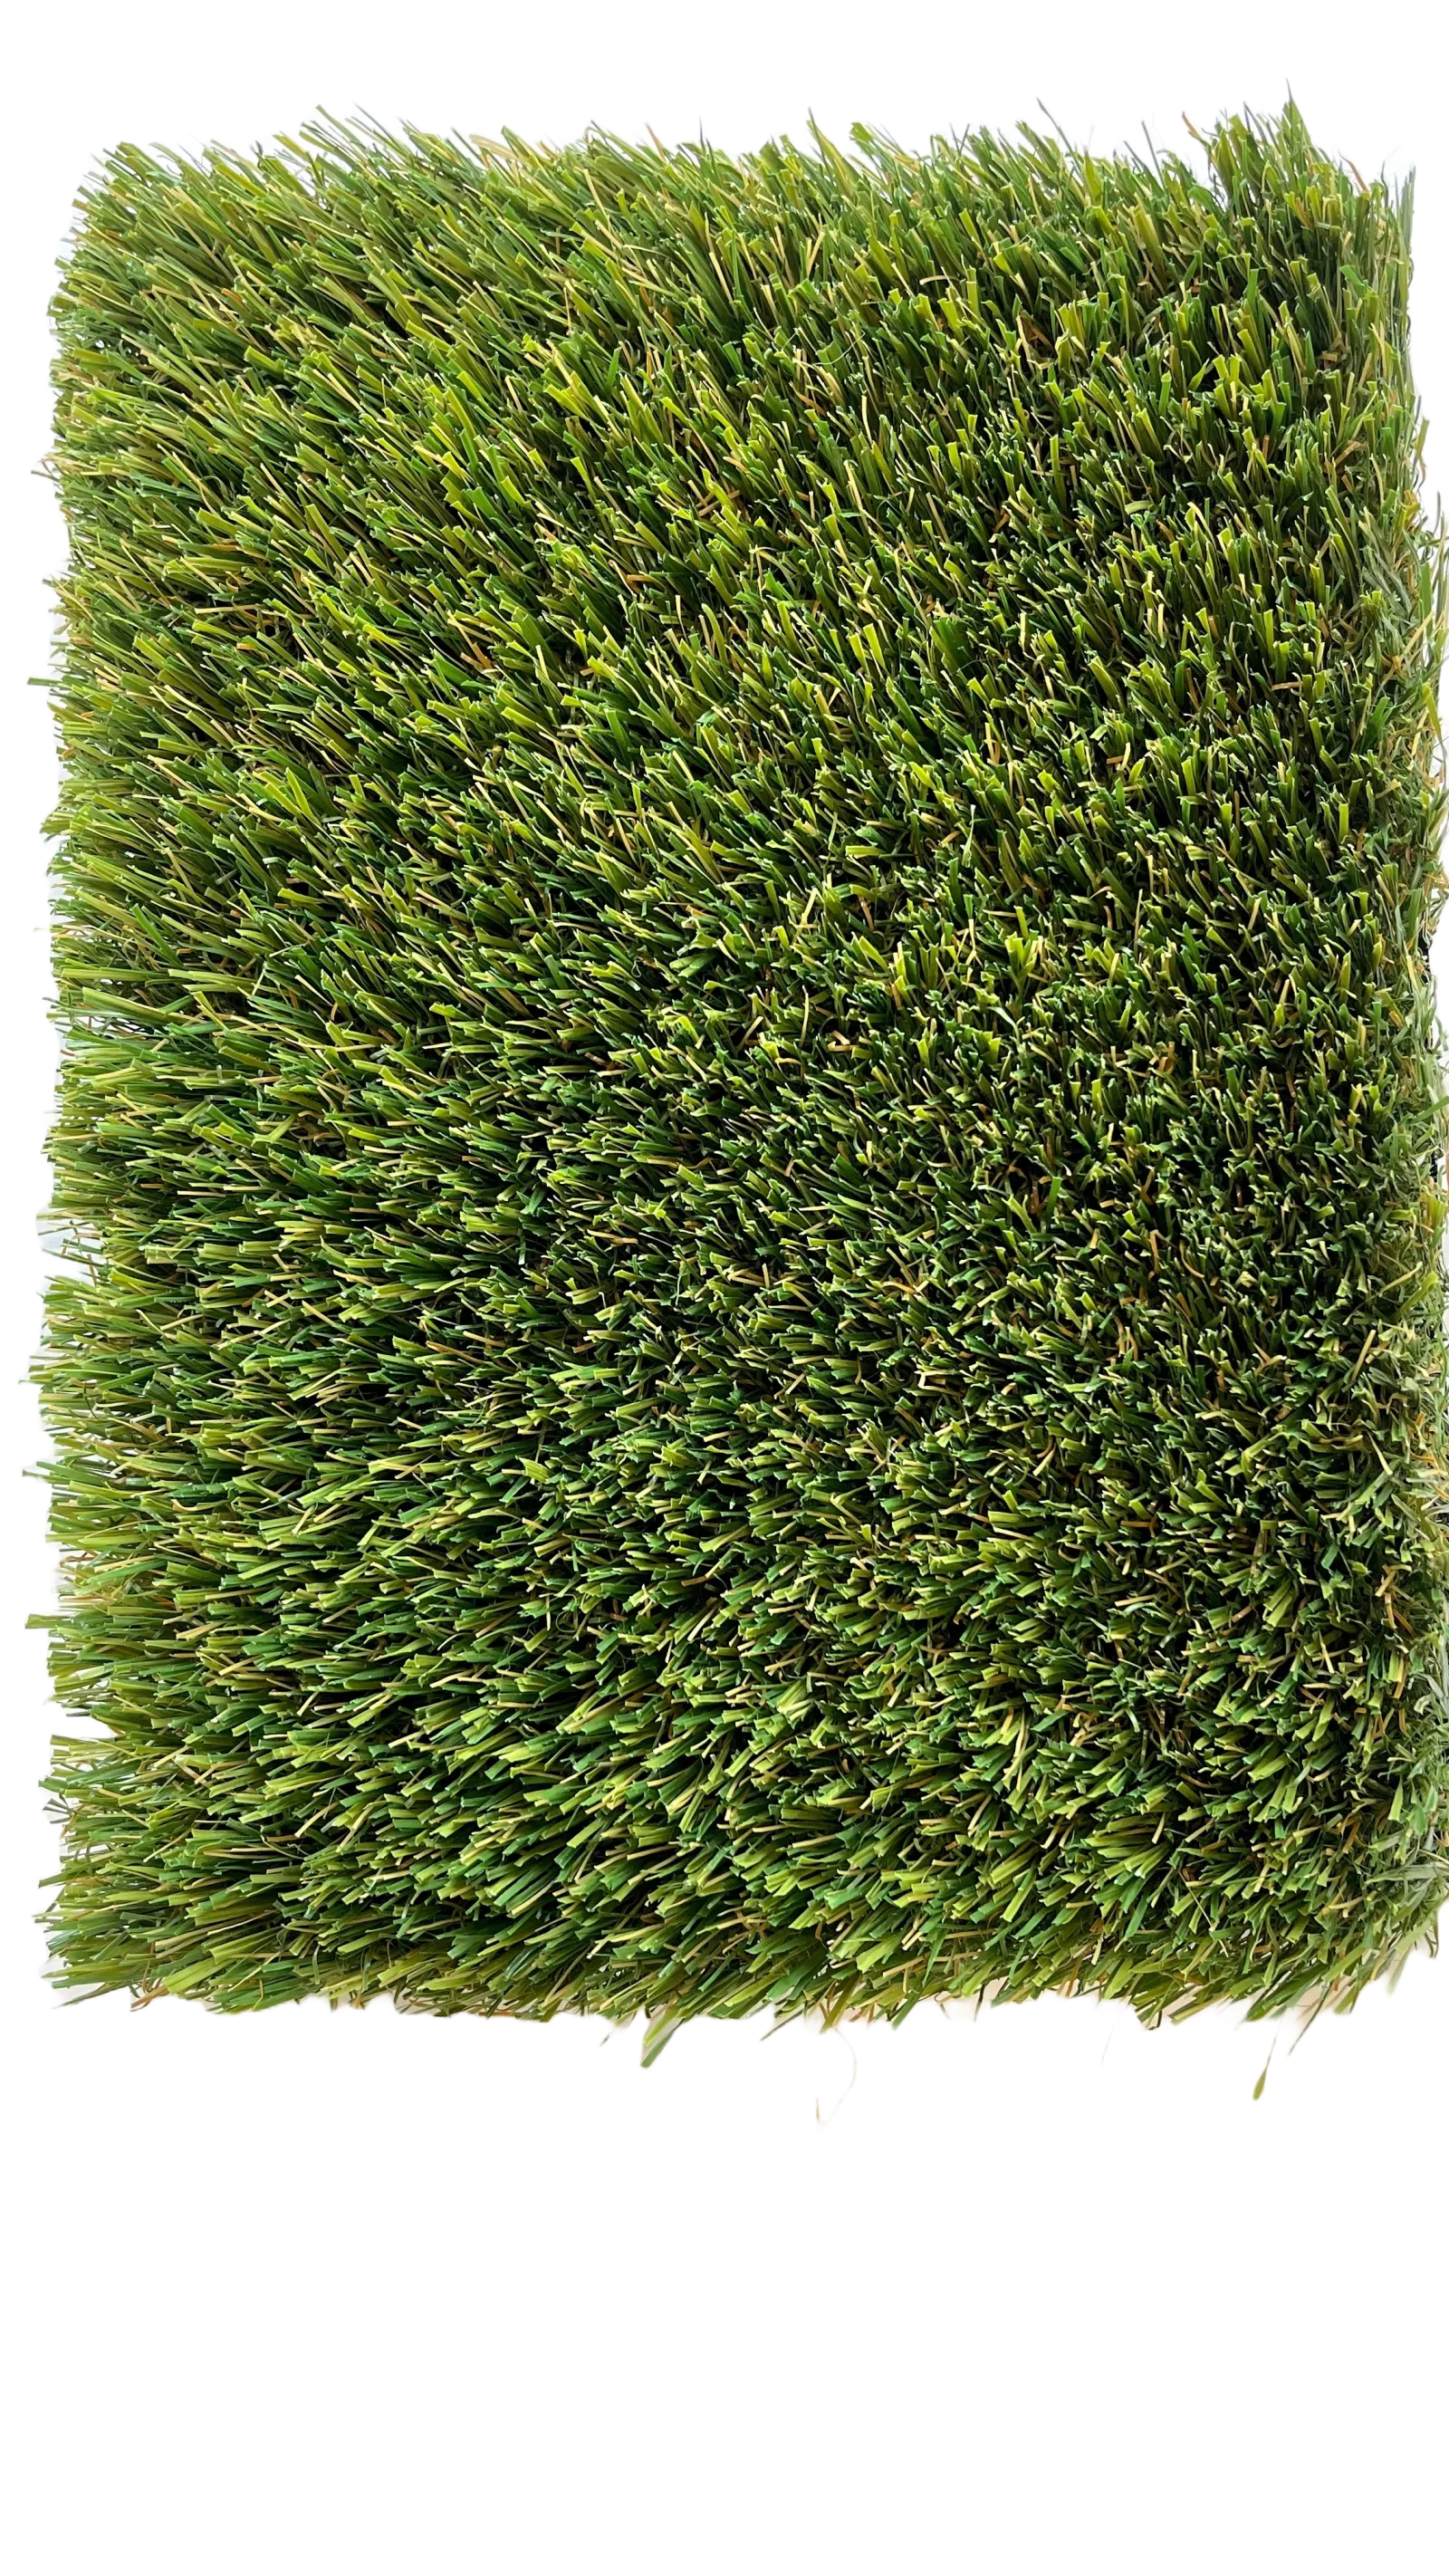 a close up of a green grass